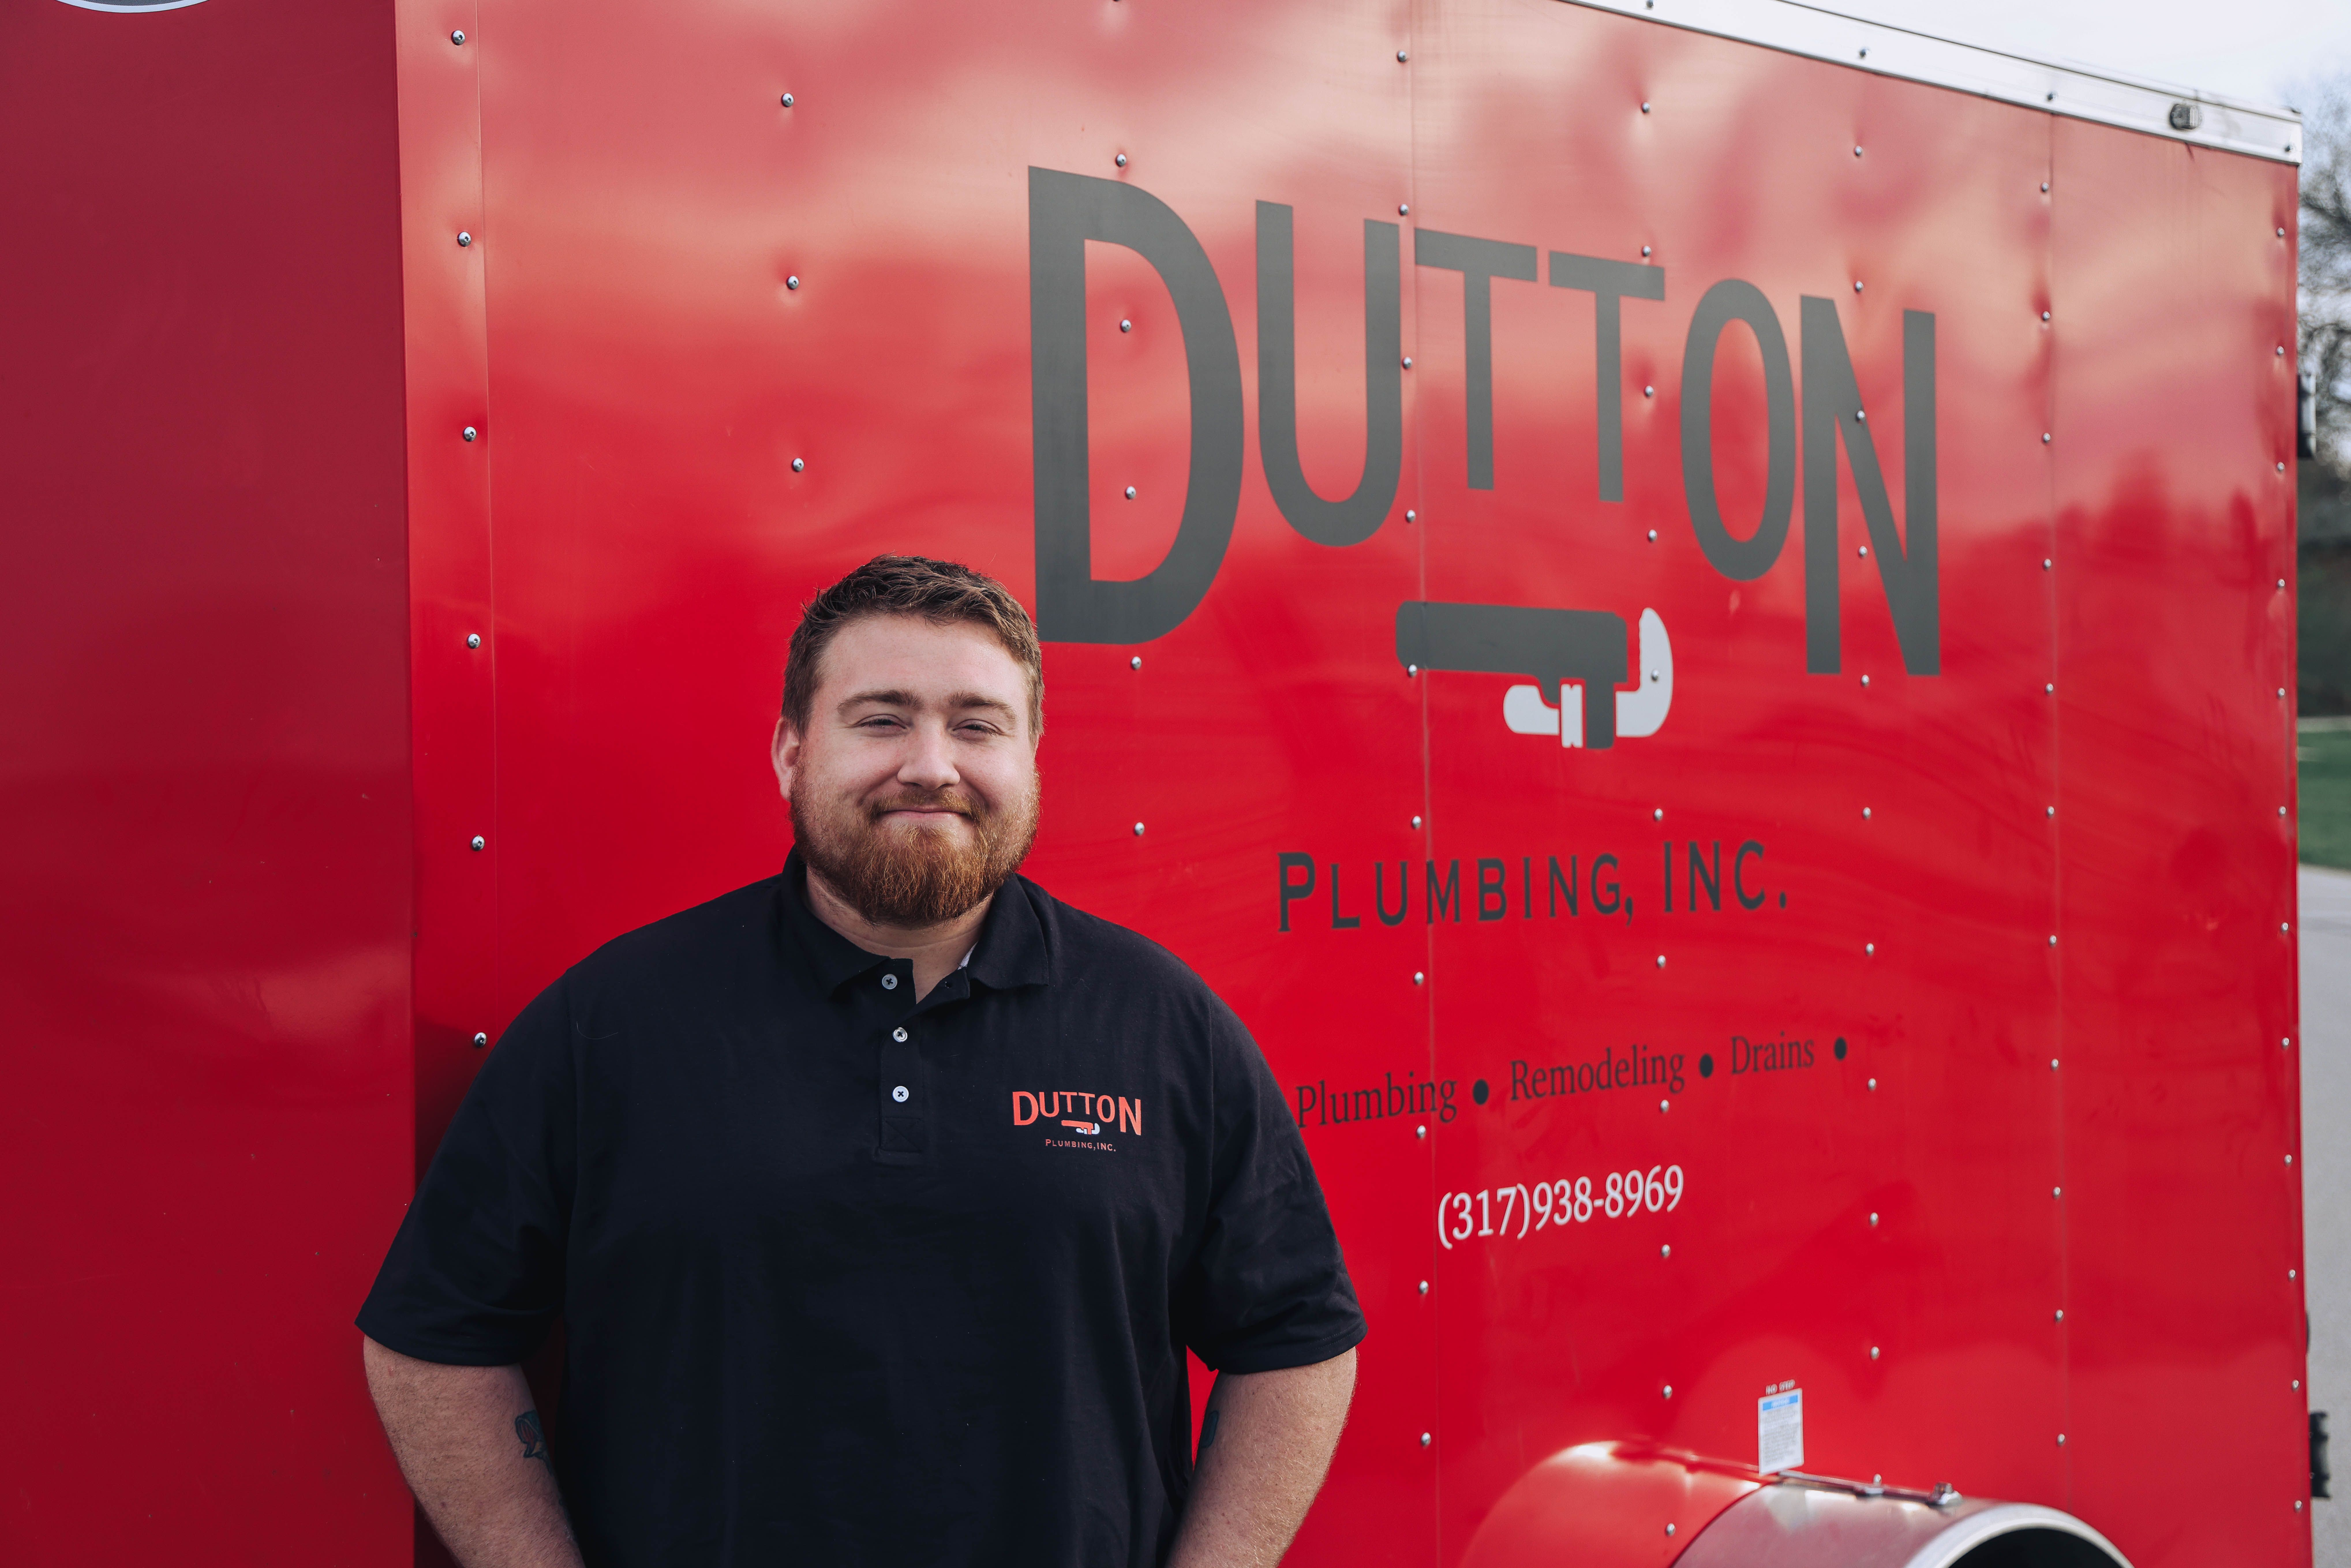 Josiah Dutton at Dutton Plumbing, Inc. in Whiteland, IN